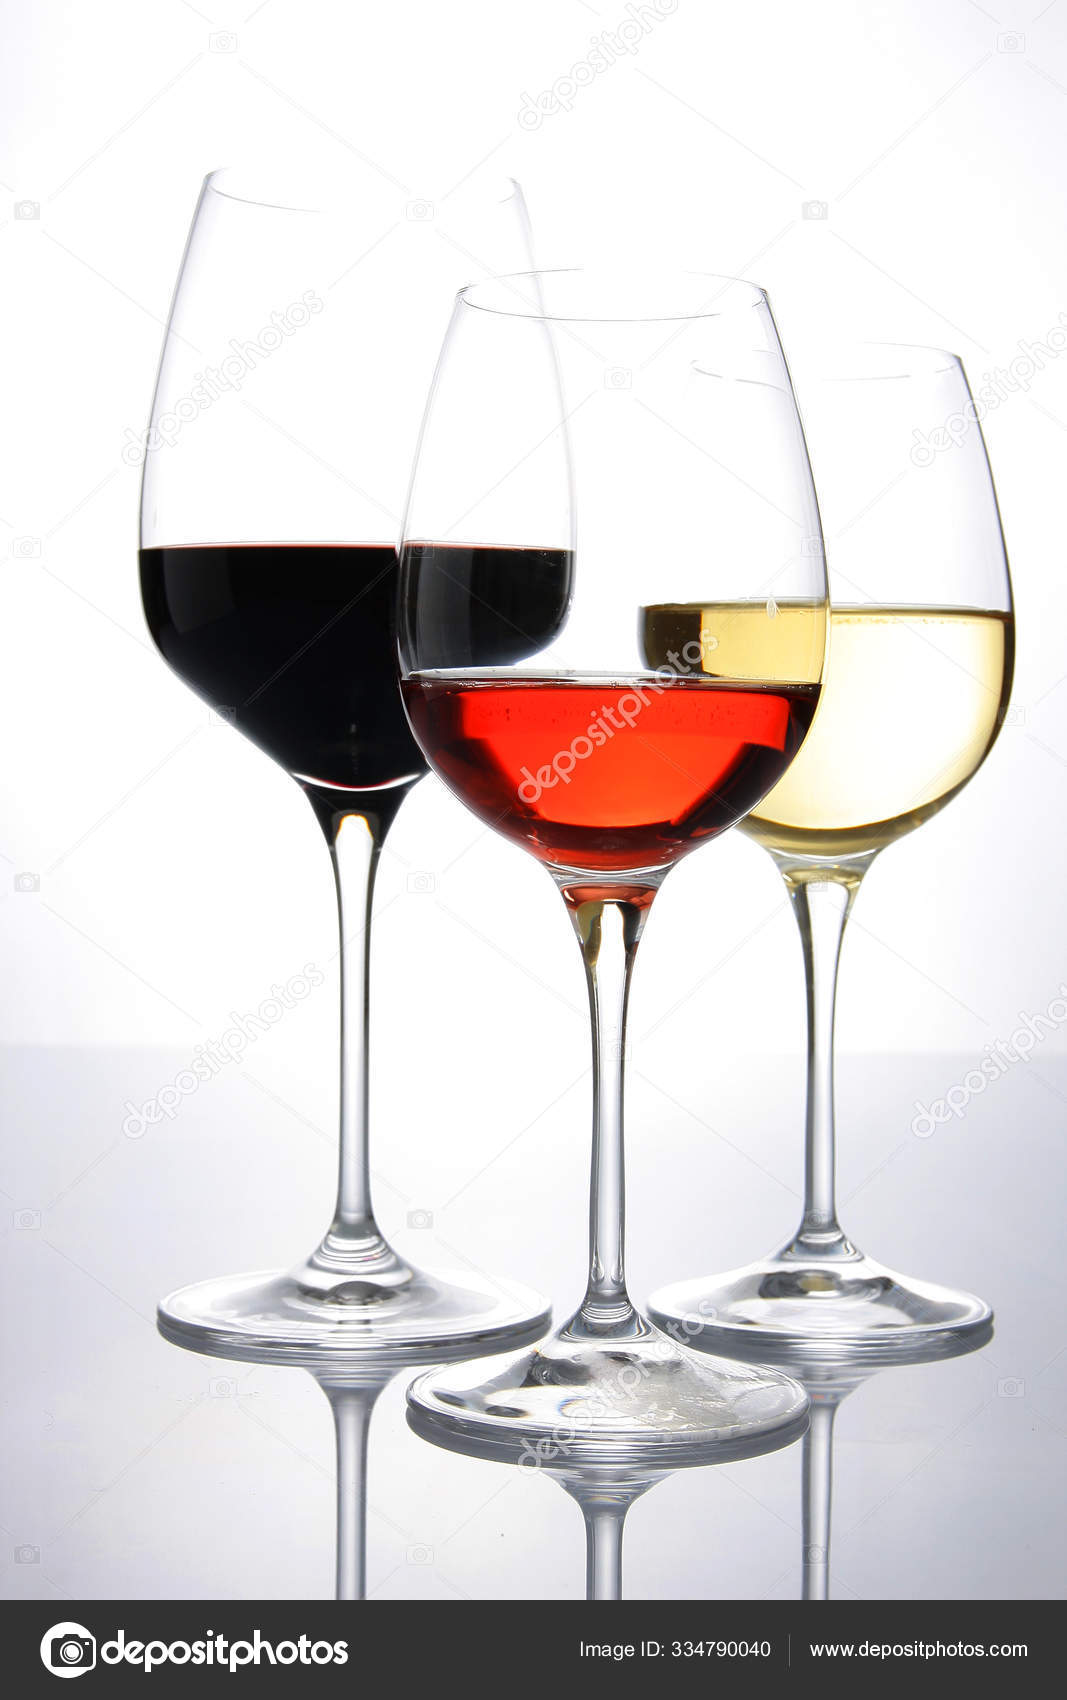 https://st3.depositphotos.com/29384342/33479/i/1600/depositphotos_334790040-stock-photo-big-wine-glasses-decanter.jpg